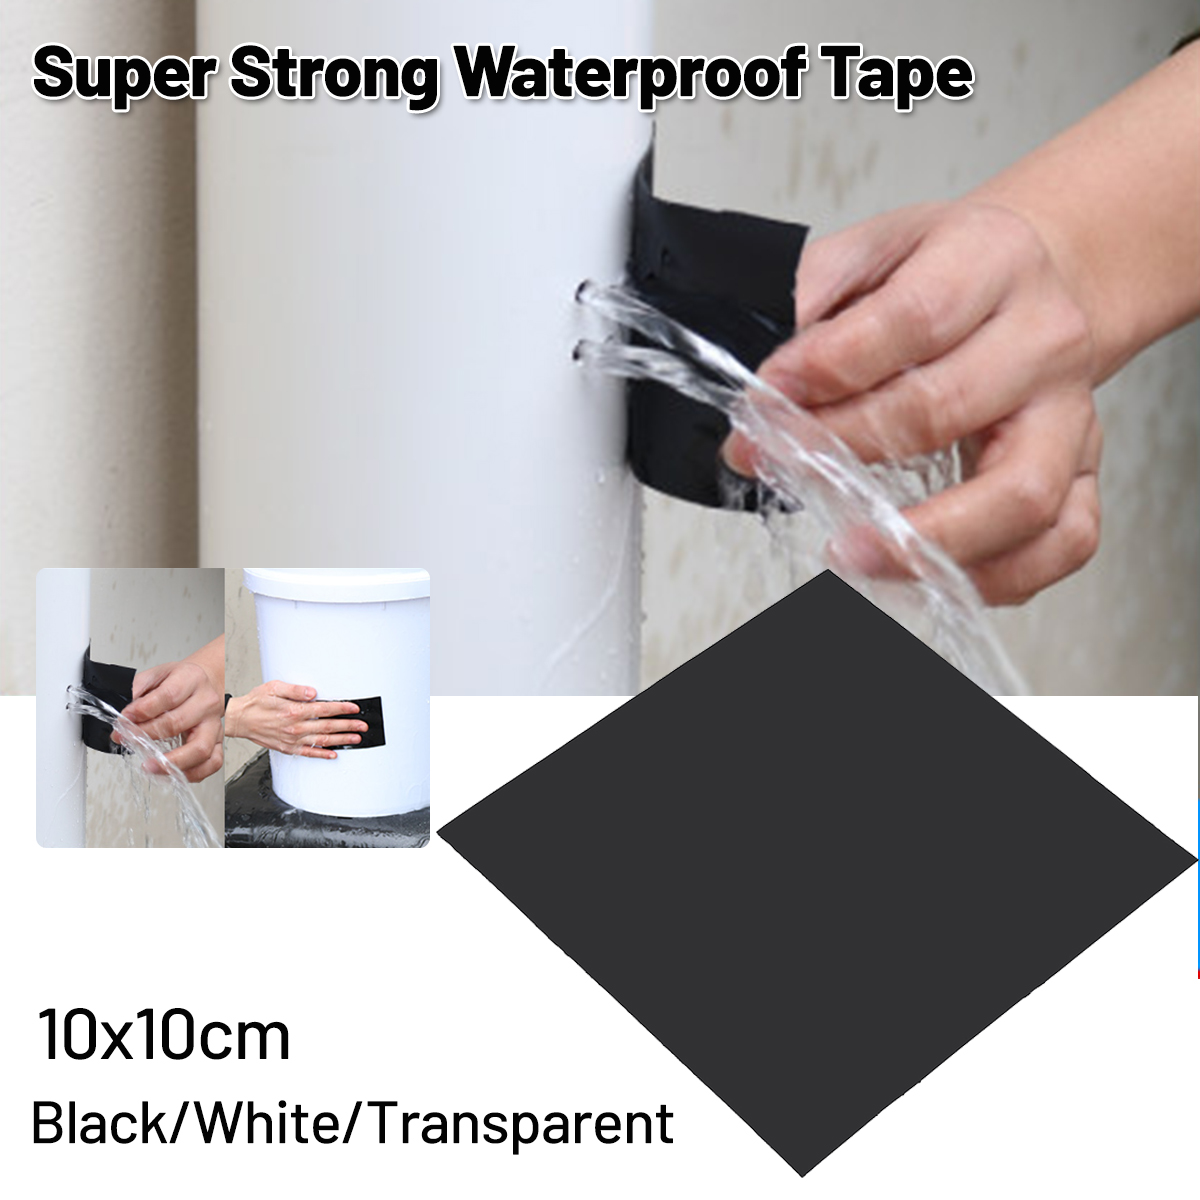 10x10cm-Super-Strong-Fiber-Waterproof-Tape-Stop-Leaks-Repair-Fix-Adhesive-Tape-1665444-1